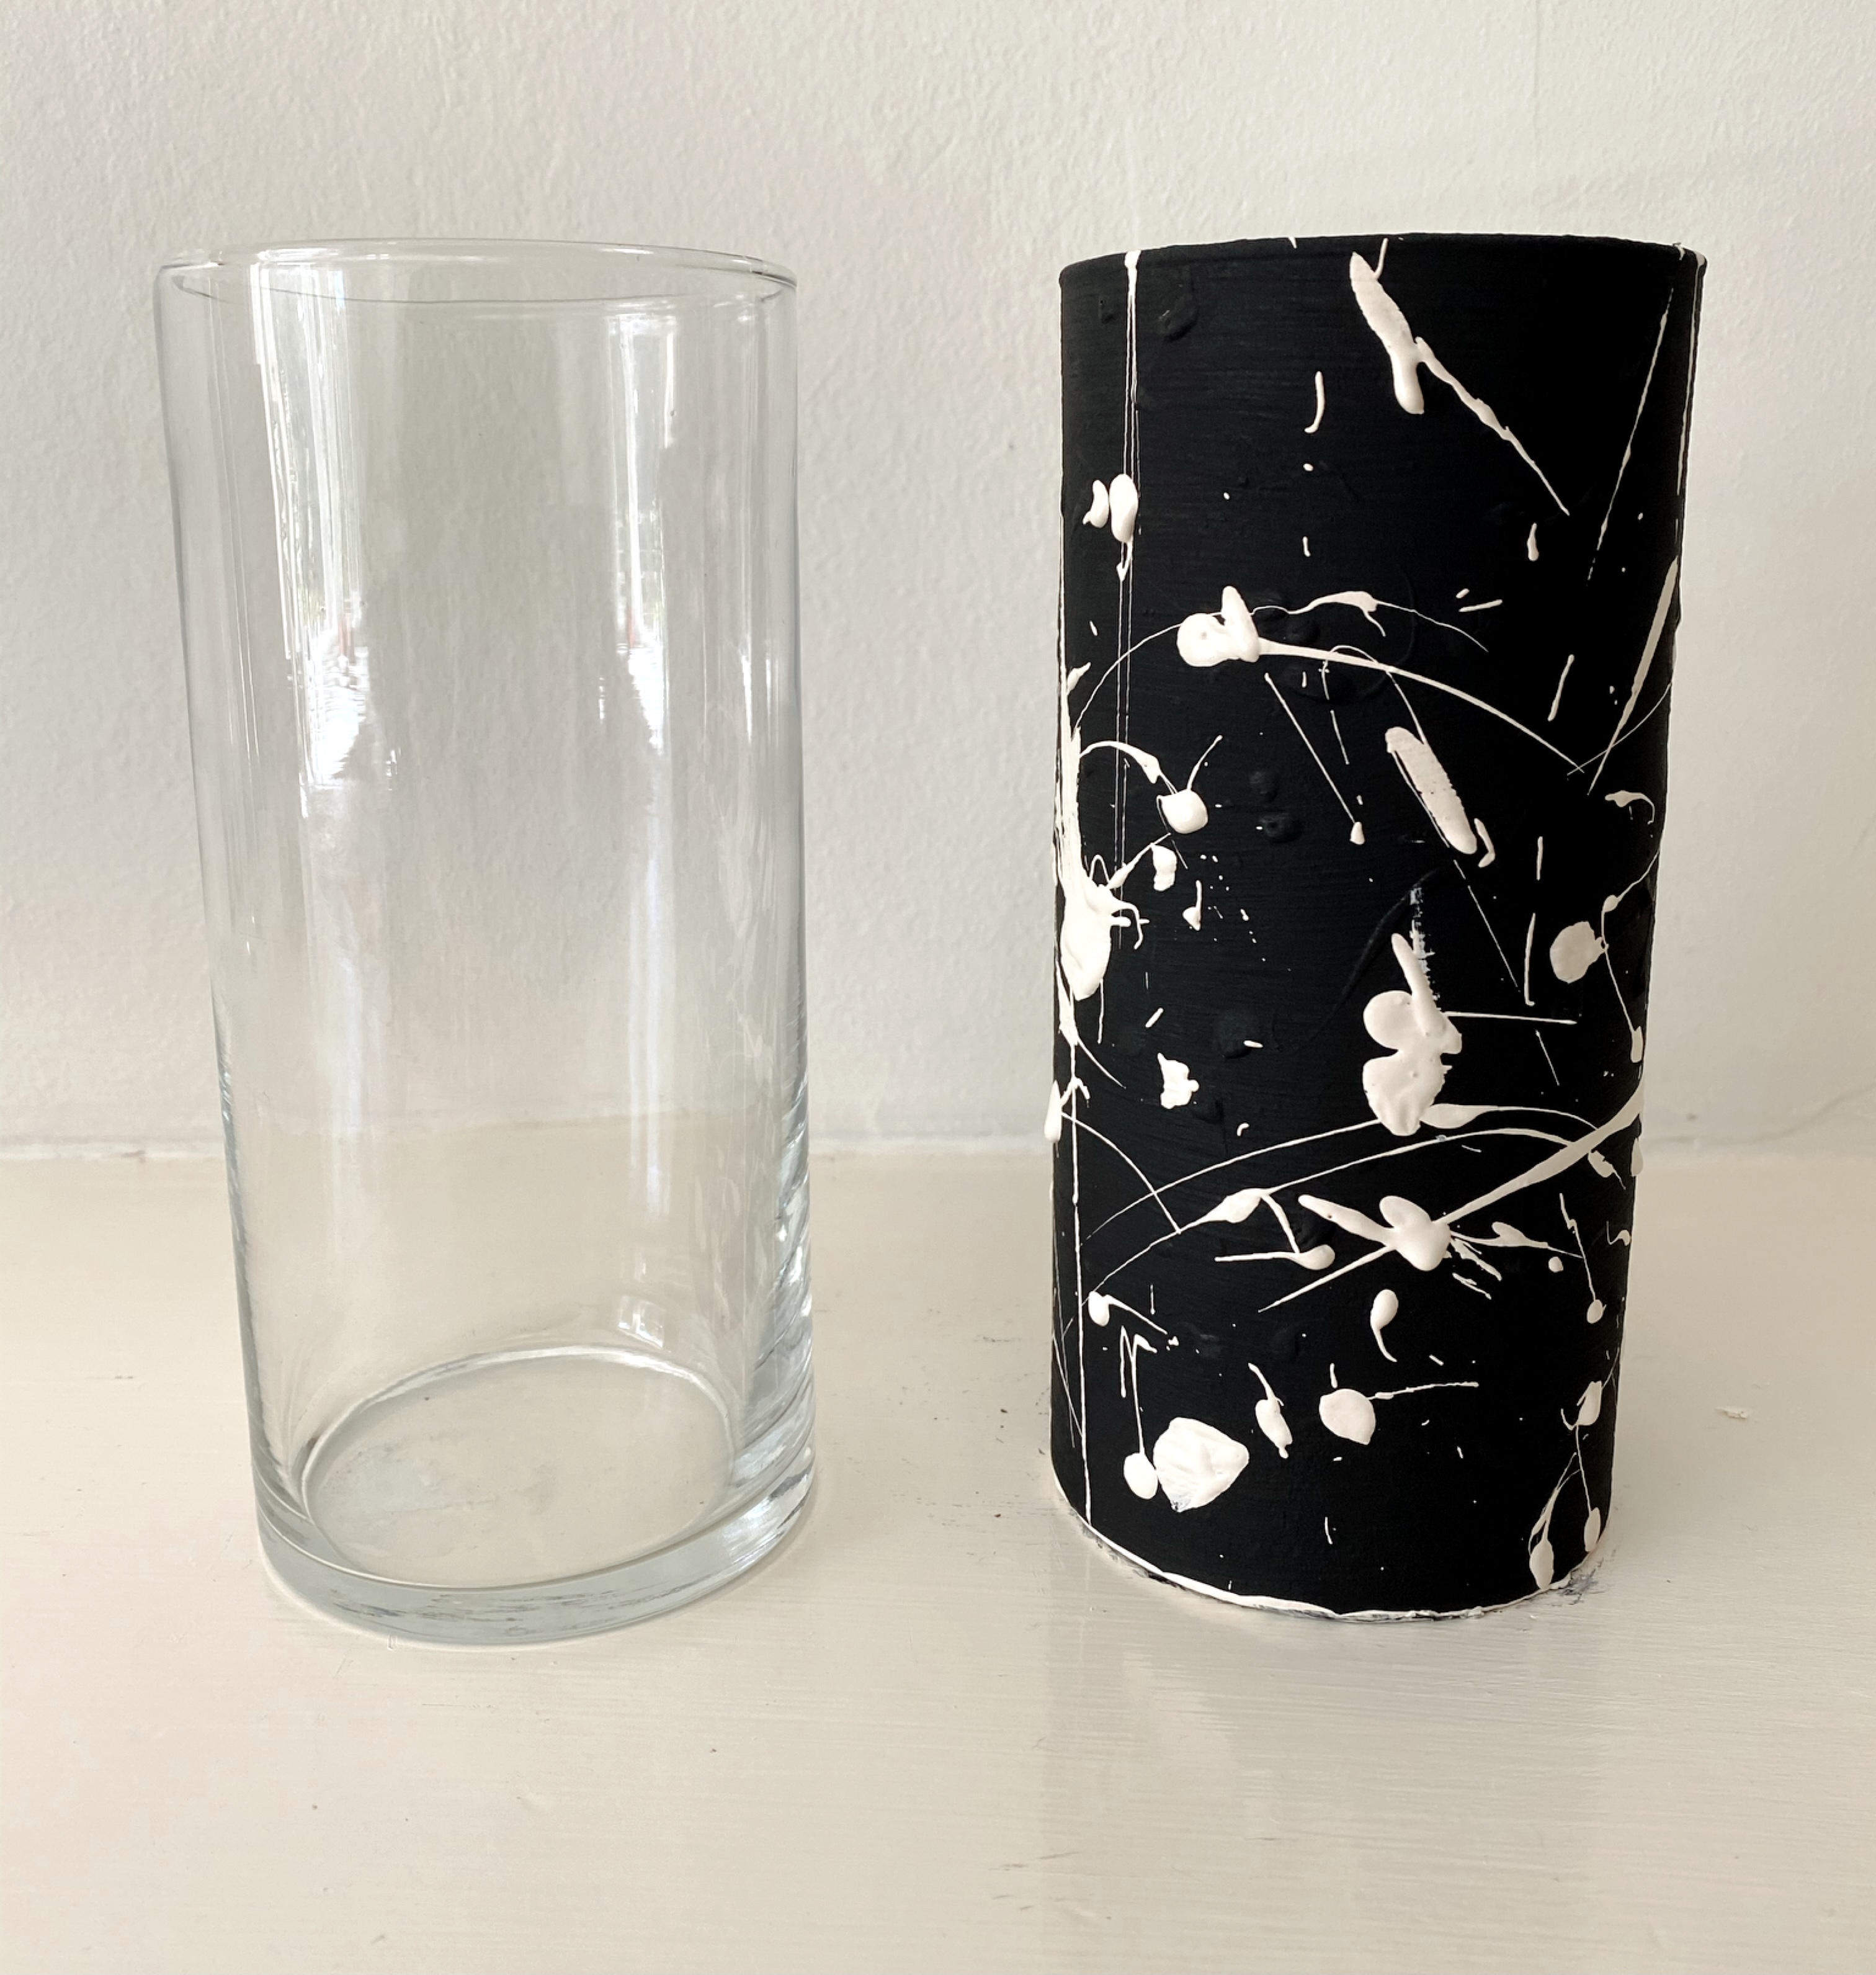 DIY $1 vases